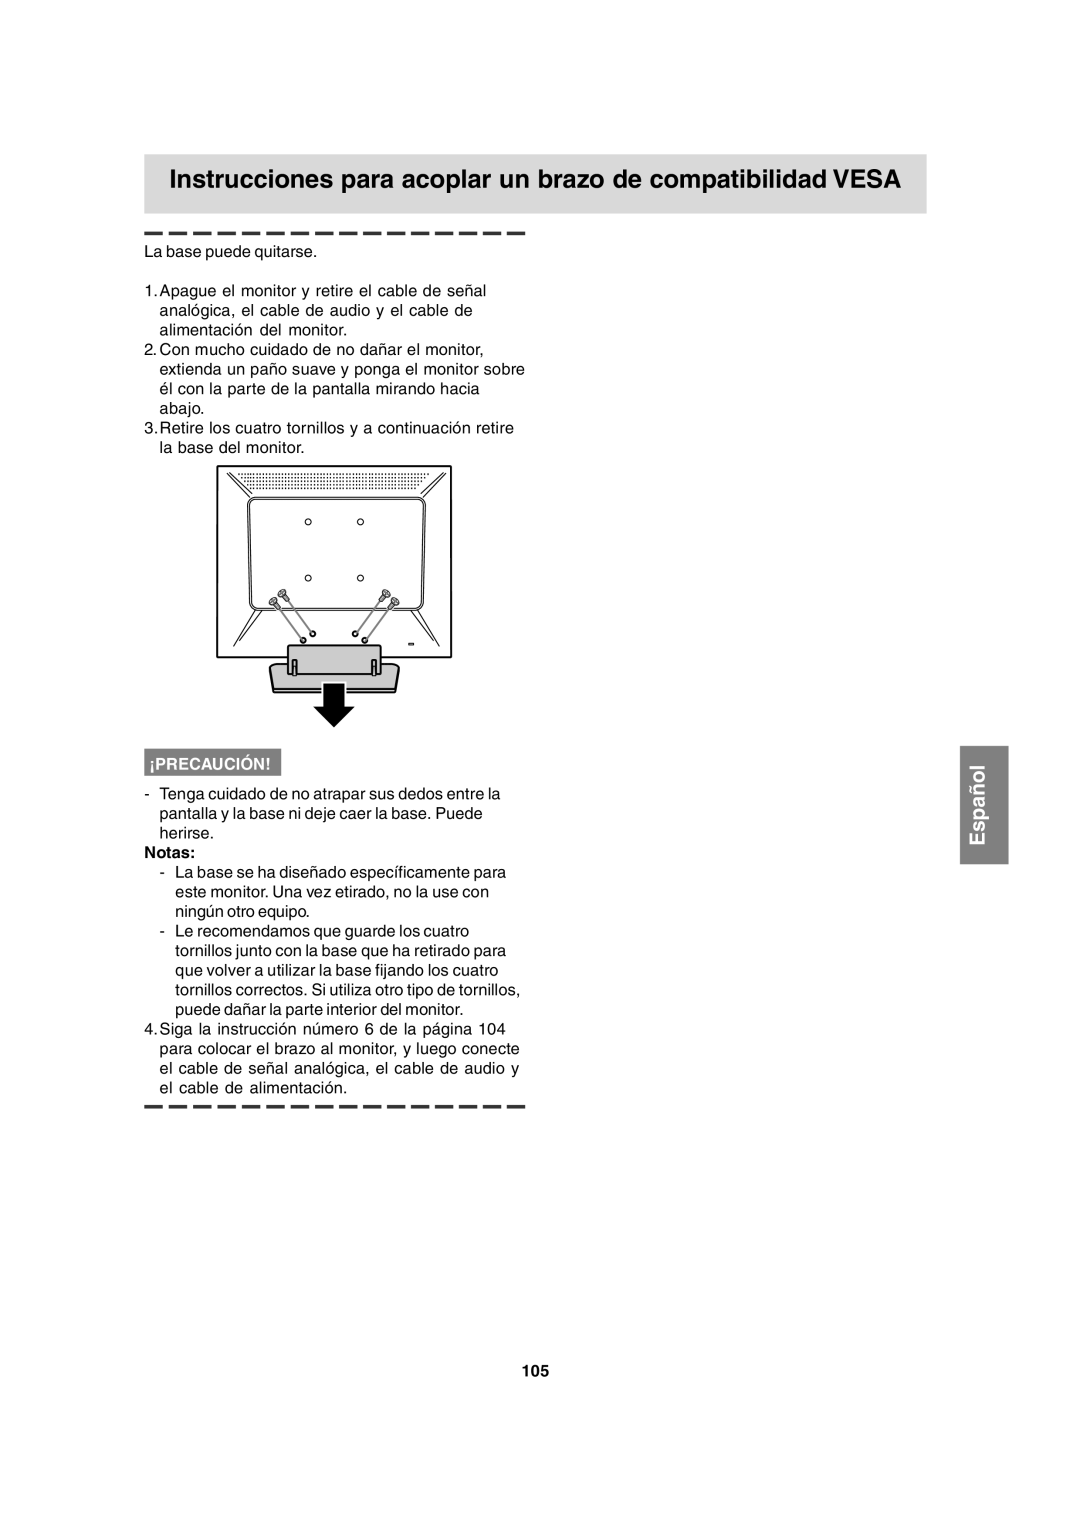 Sharp LL-T15A4 operation manual Instrucciones para acoplar un brazo de compatibilidad VESA, Español, ¡Precaución, Notas 